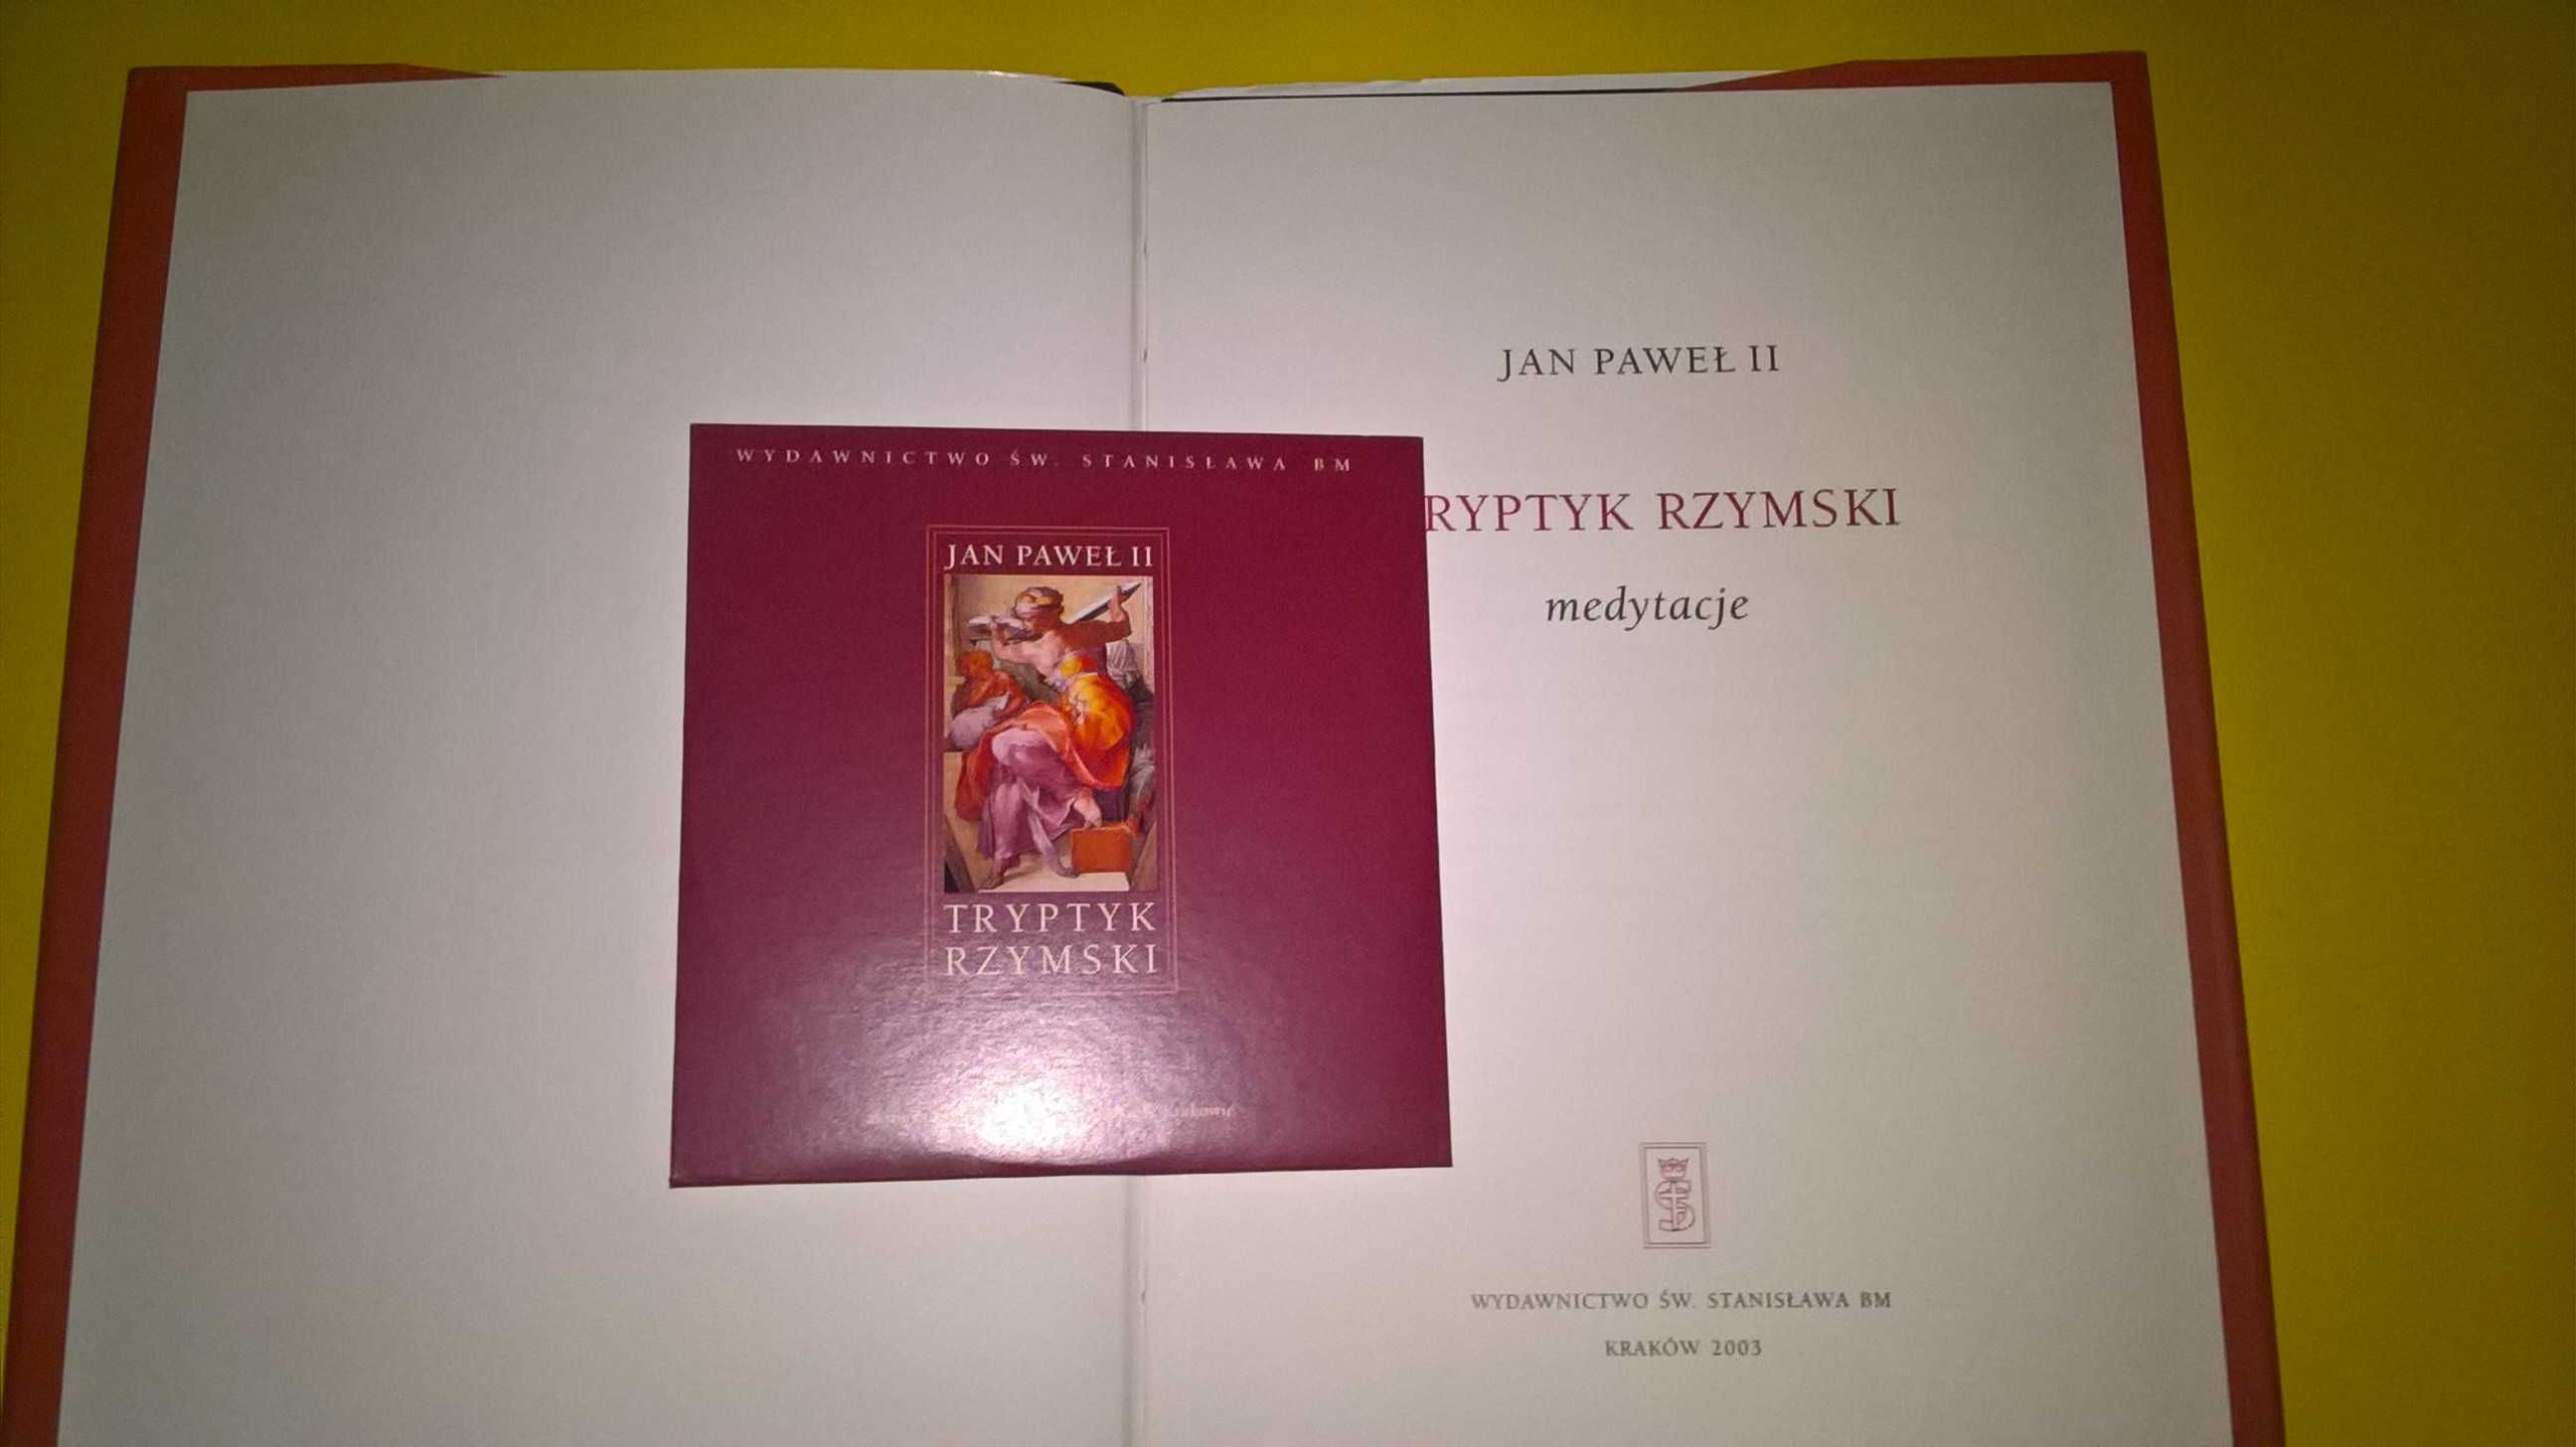 Tryptyk rzymski książka nowa Jan Paweł II z płytą